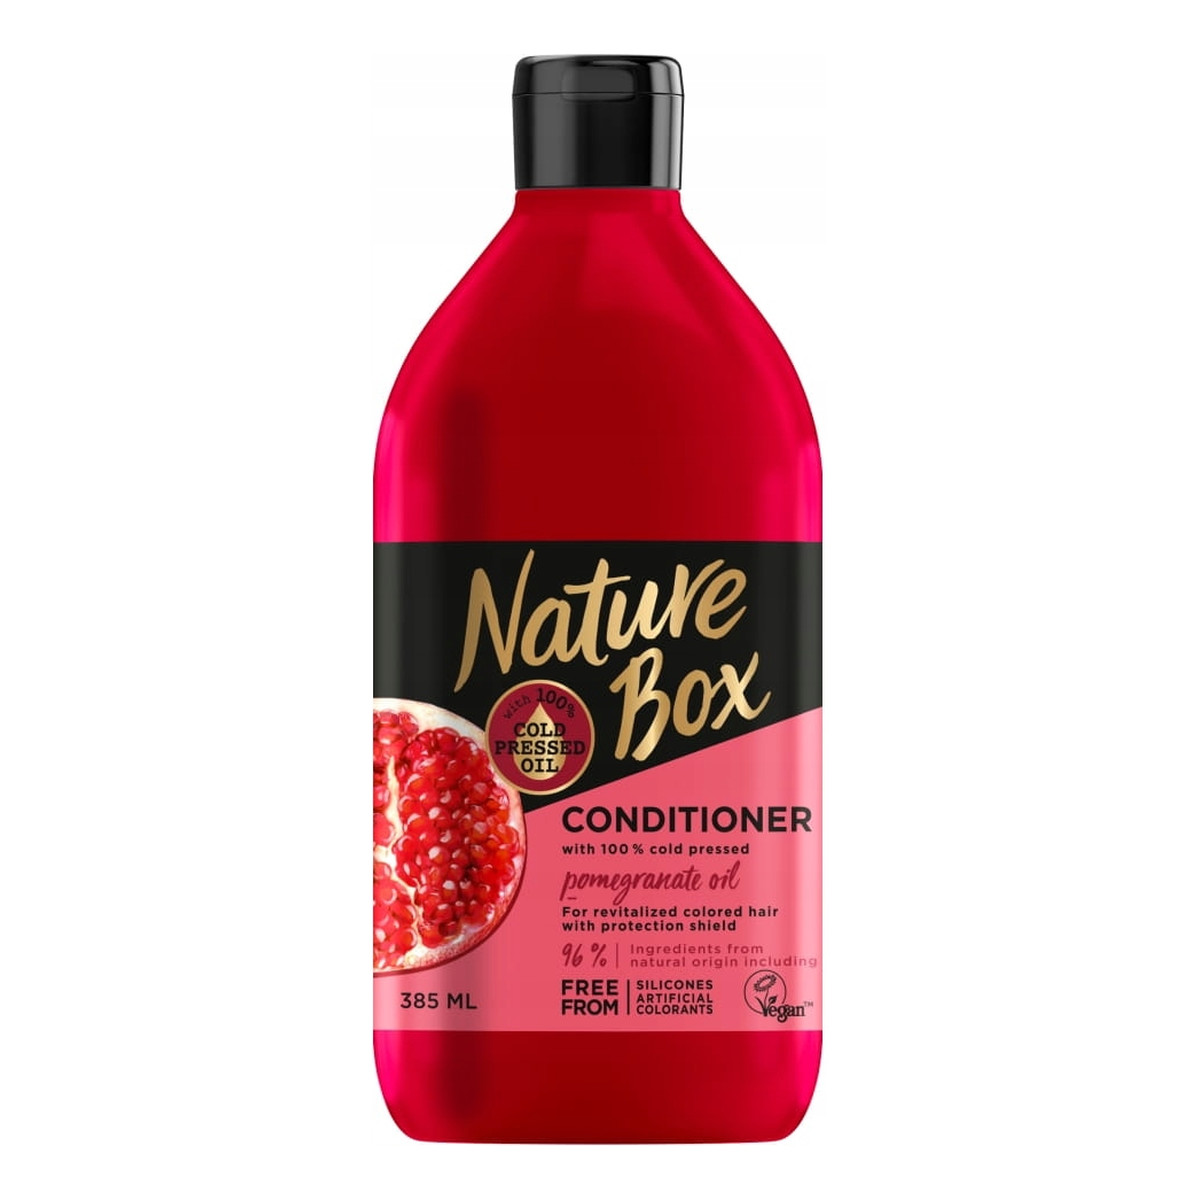 Nature Box Conditioner odżywka do włosów pomegranate oil 385ml